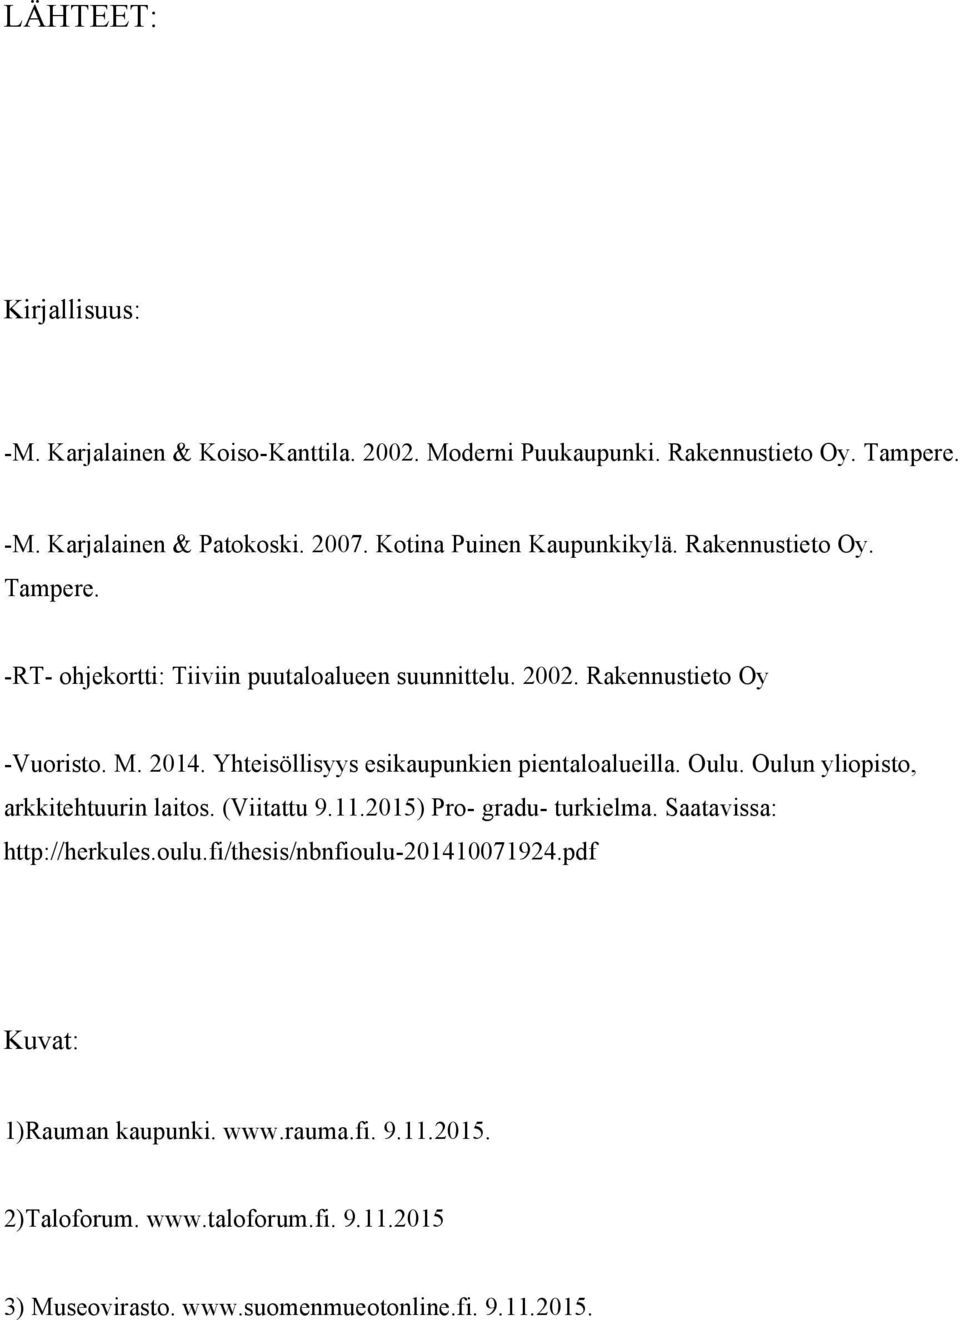 Yhteisöllisyys esikaupunkien pientaloalueilla. Oulu. Oulun yliopisto, arkkitehtuurin laitos. (Viitattu 9.11.2015) Pro- gradu- turkielma.